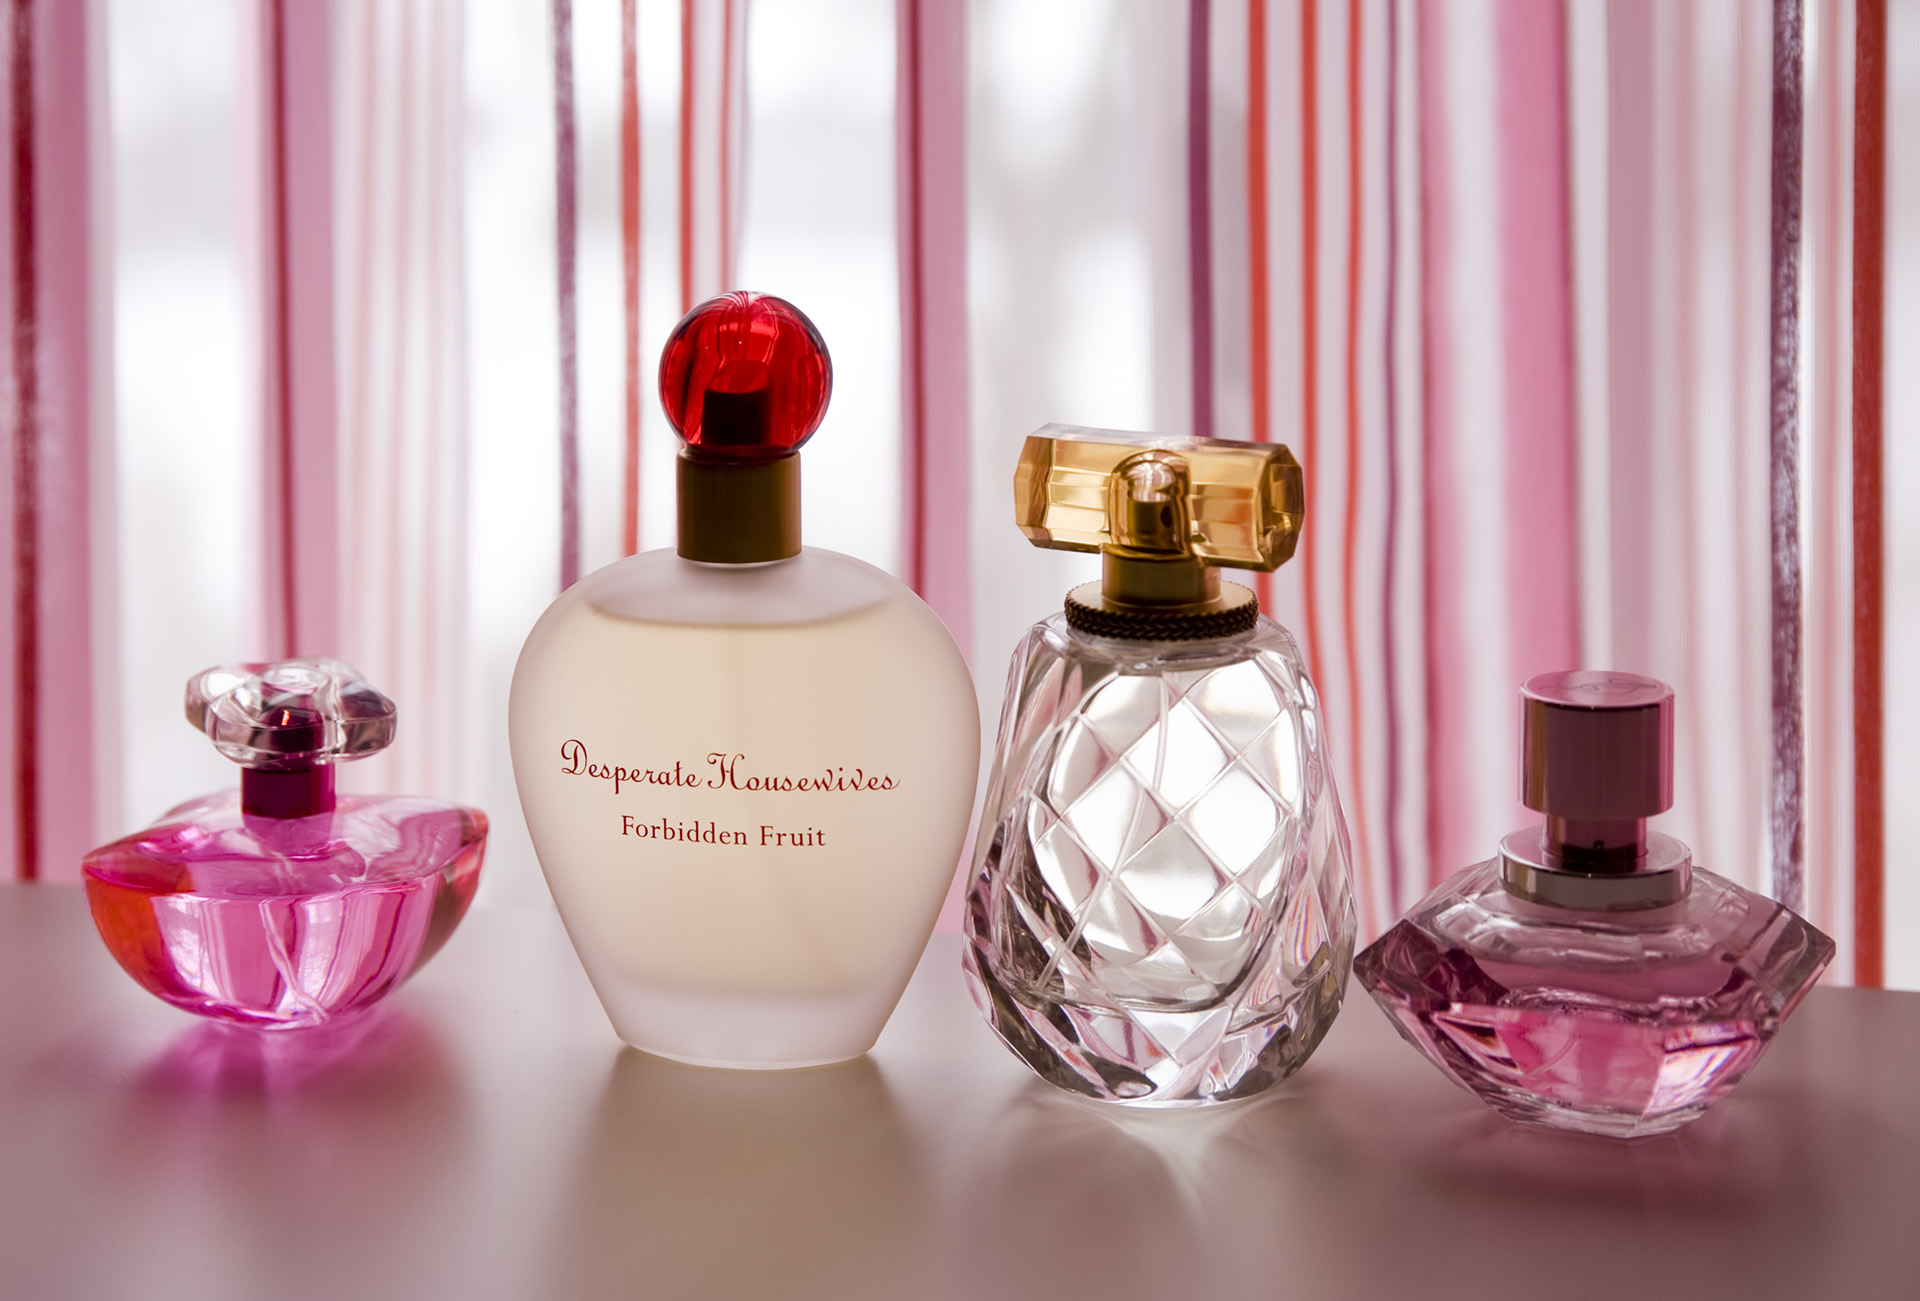 Pink perfume bottles